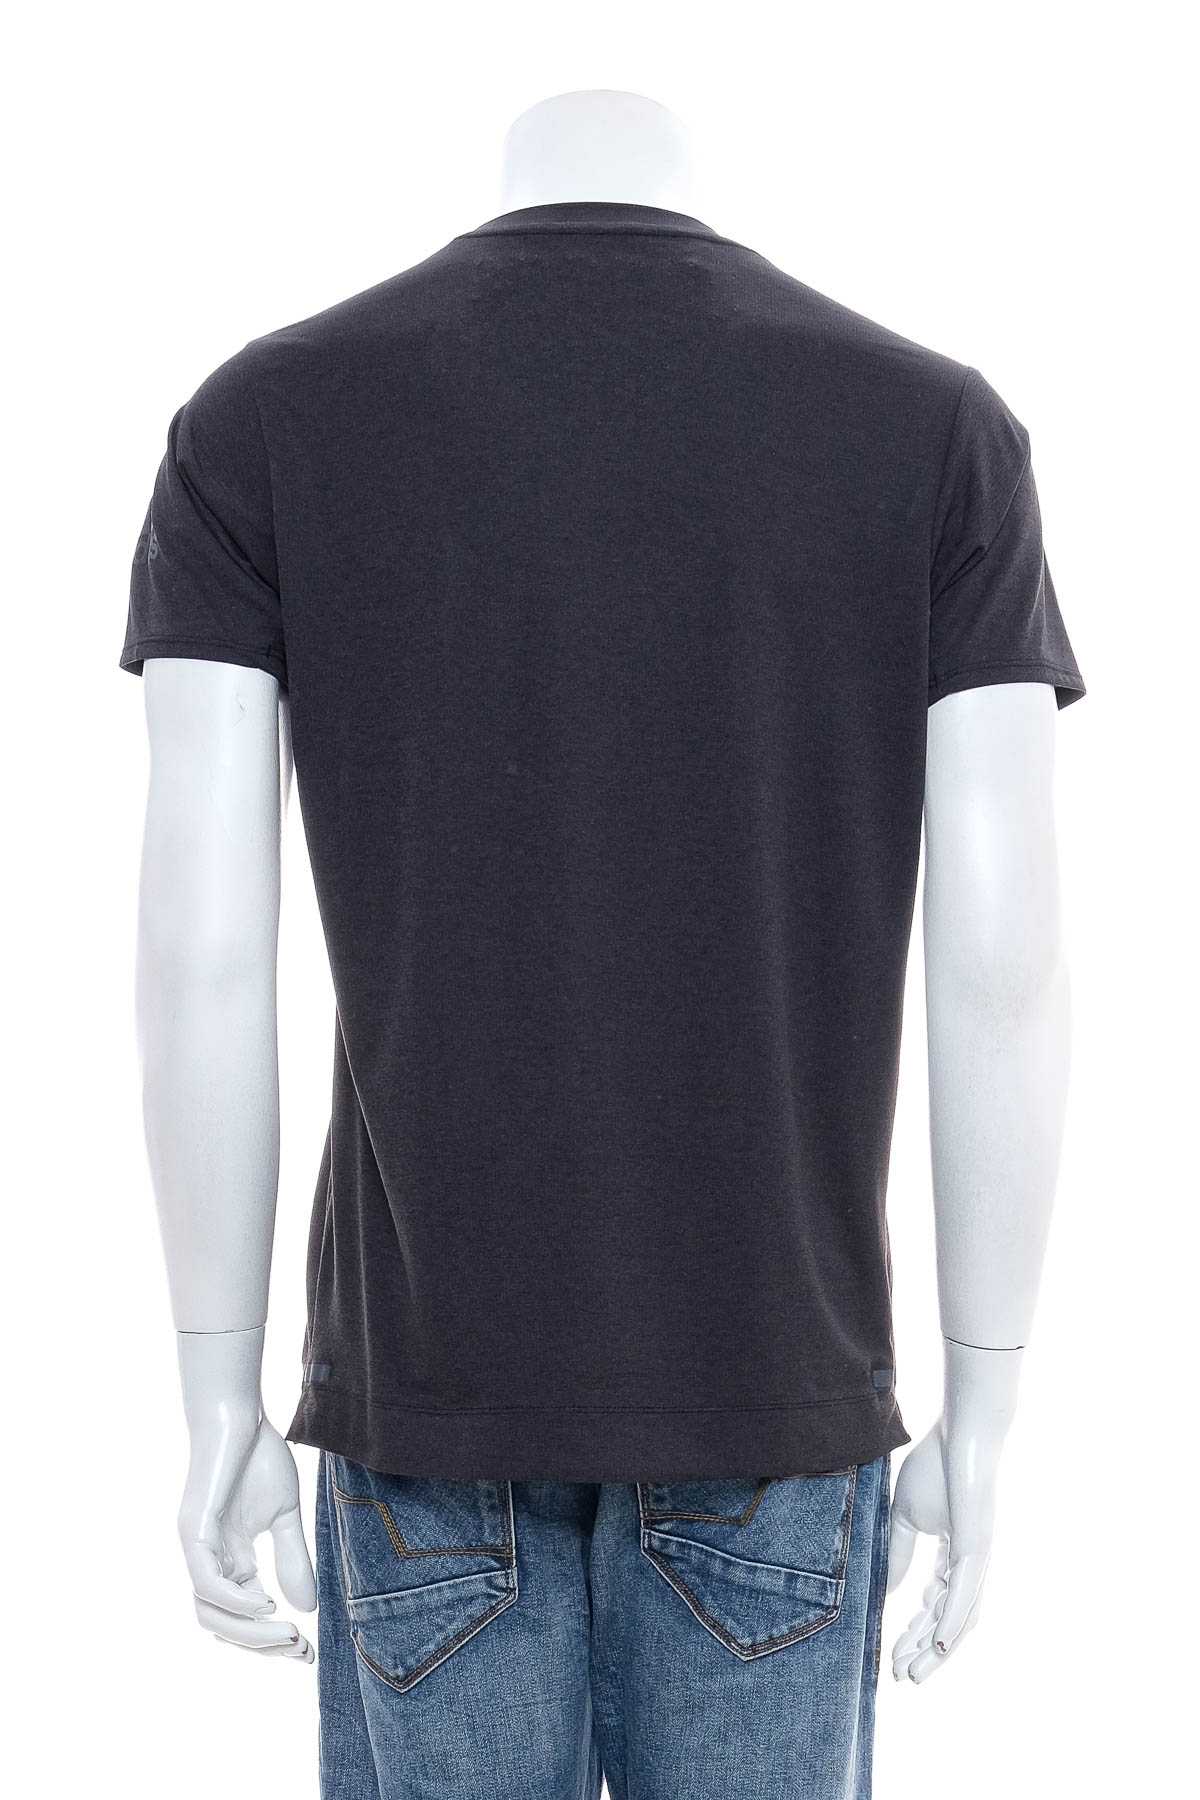 Tricou pentru bărbați - Adidas climachill - 1